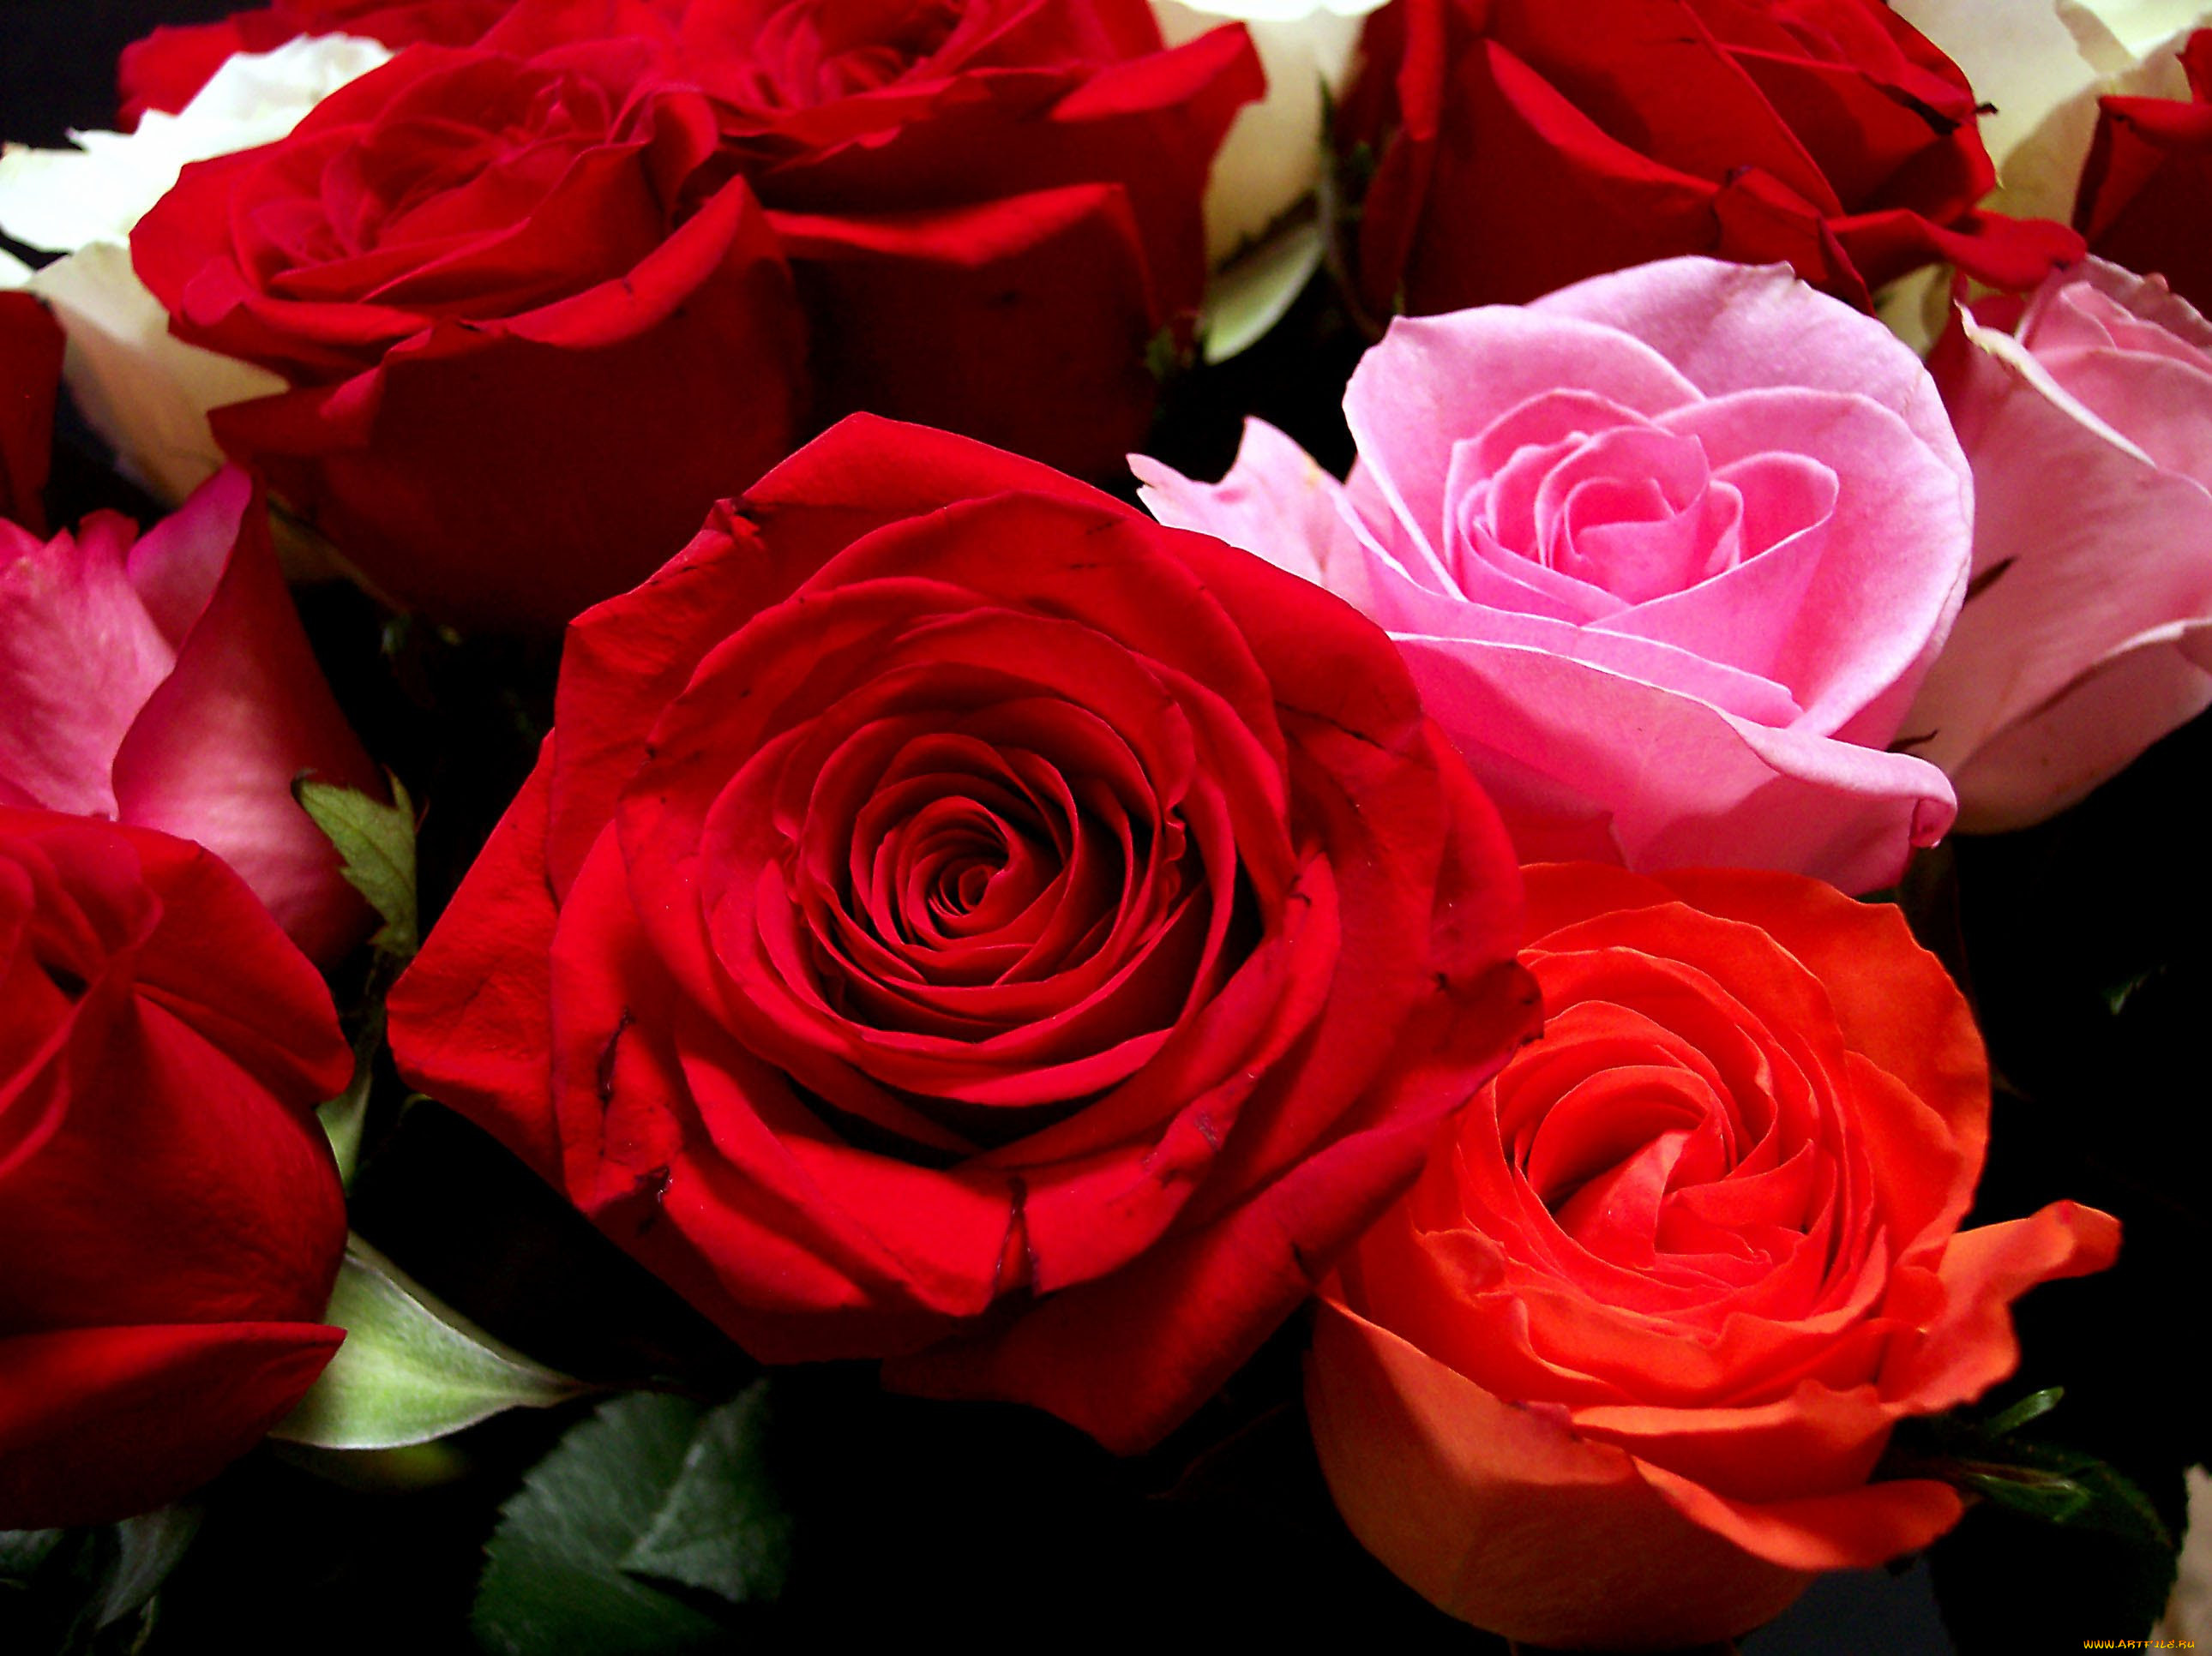 Фотки красивых роз. Красивые розы. Красивый букет роз. Роскошные красные розы.